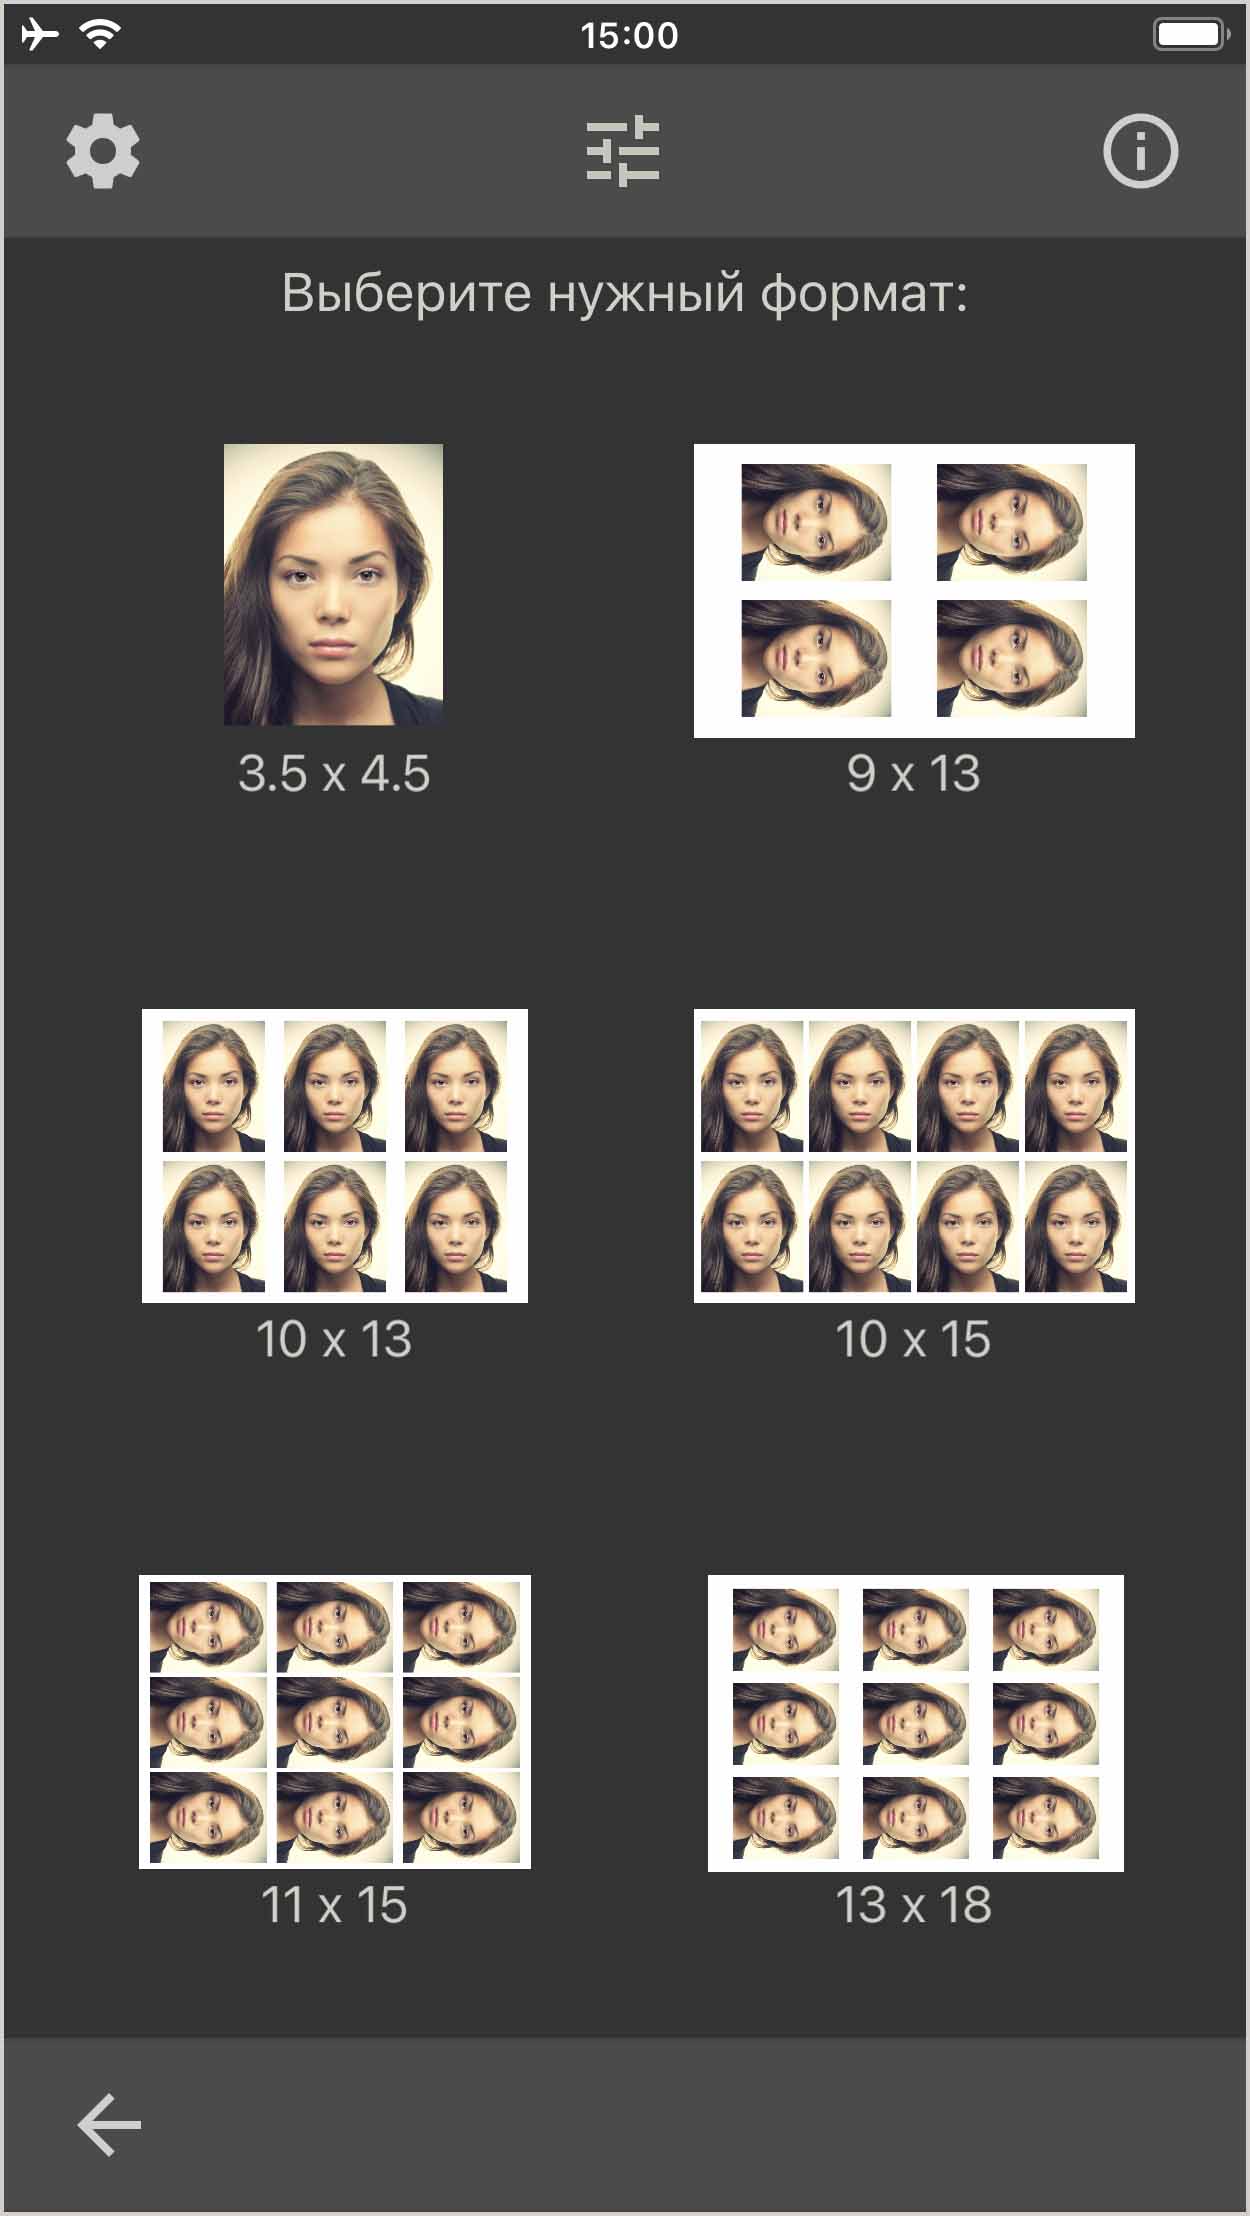 Несколько фотографий паспортов в одном формате фотографий. (Приложение для iOS)